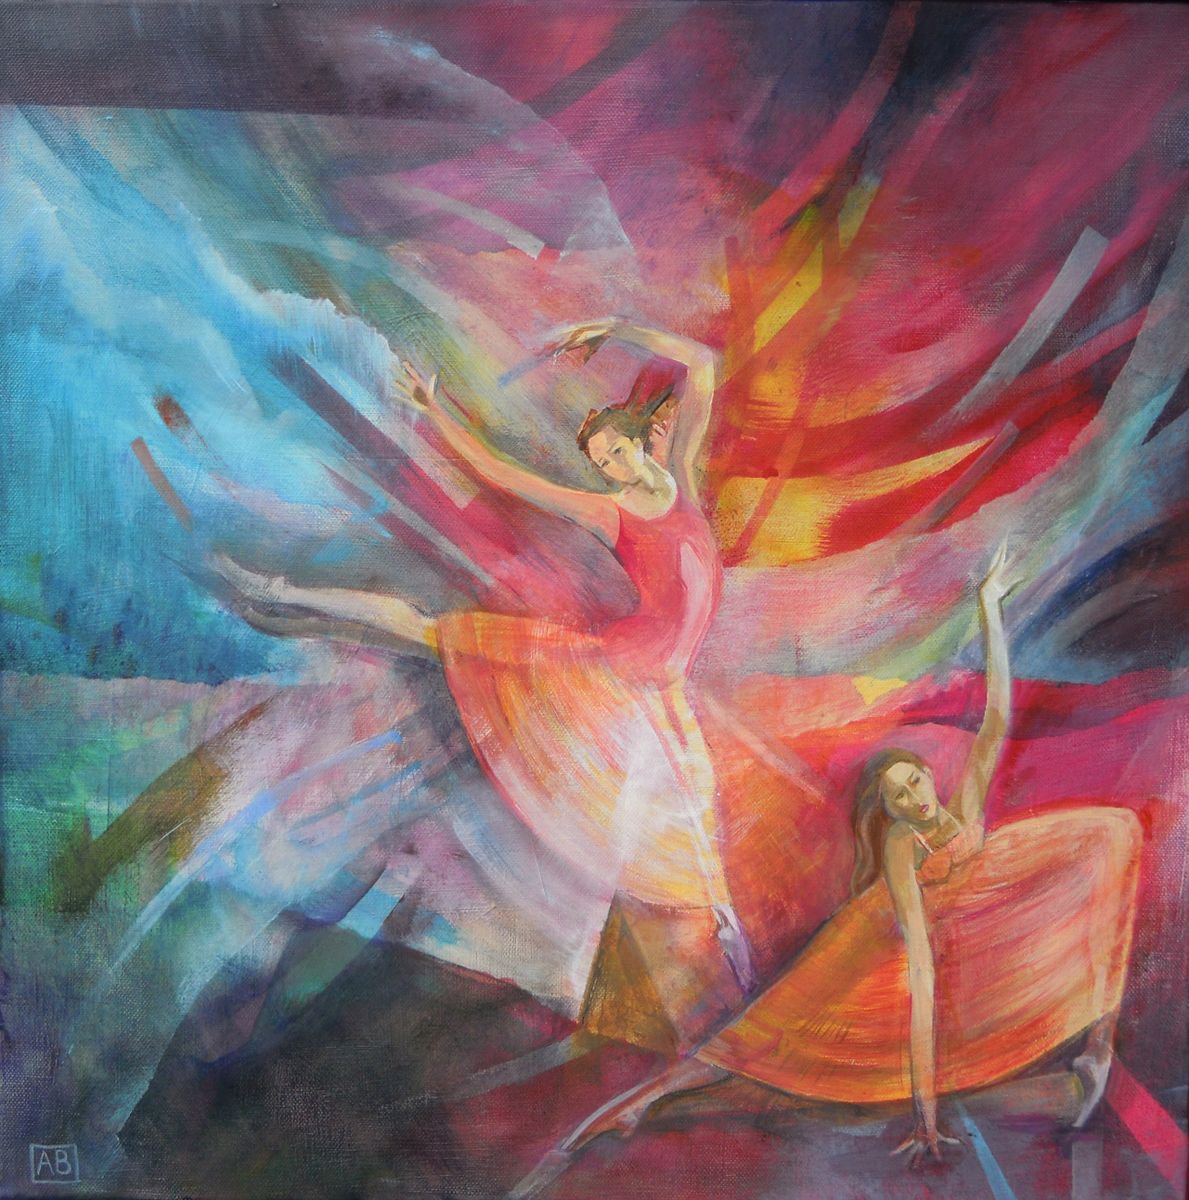 Fire Dance by Angela Brittain